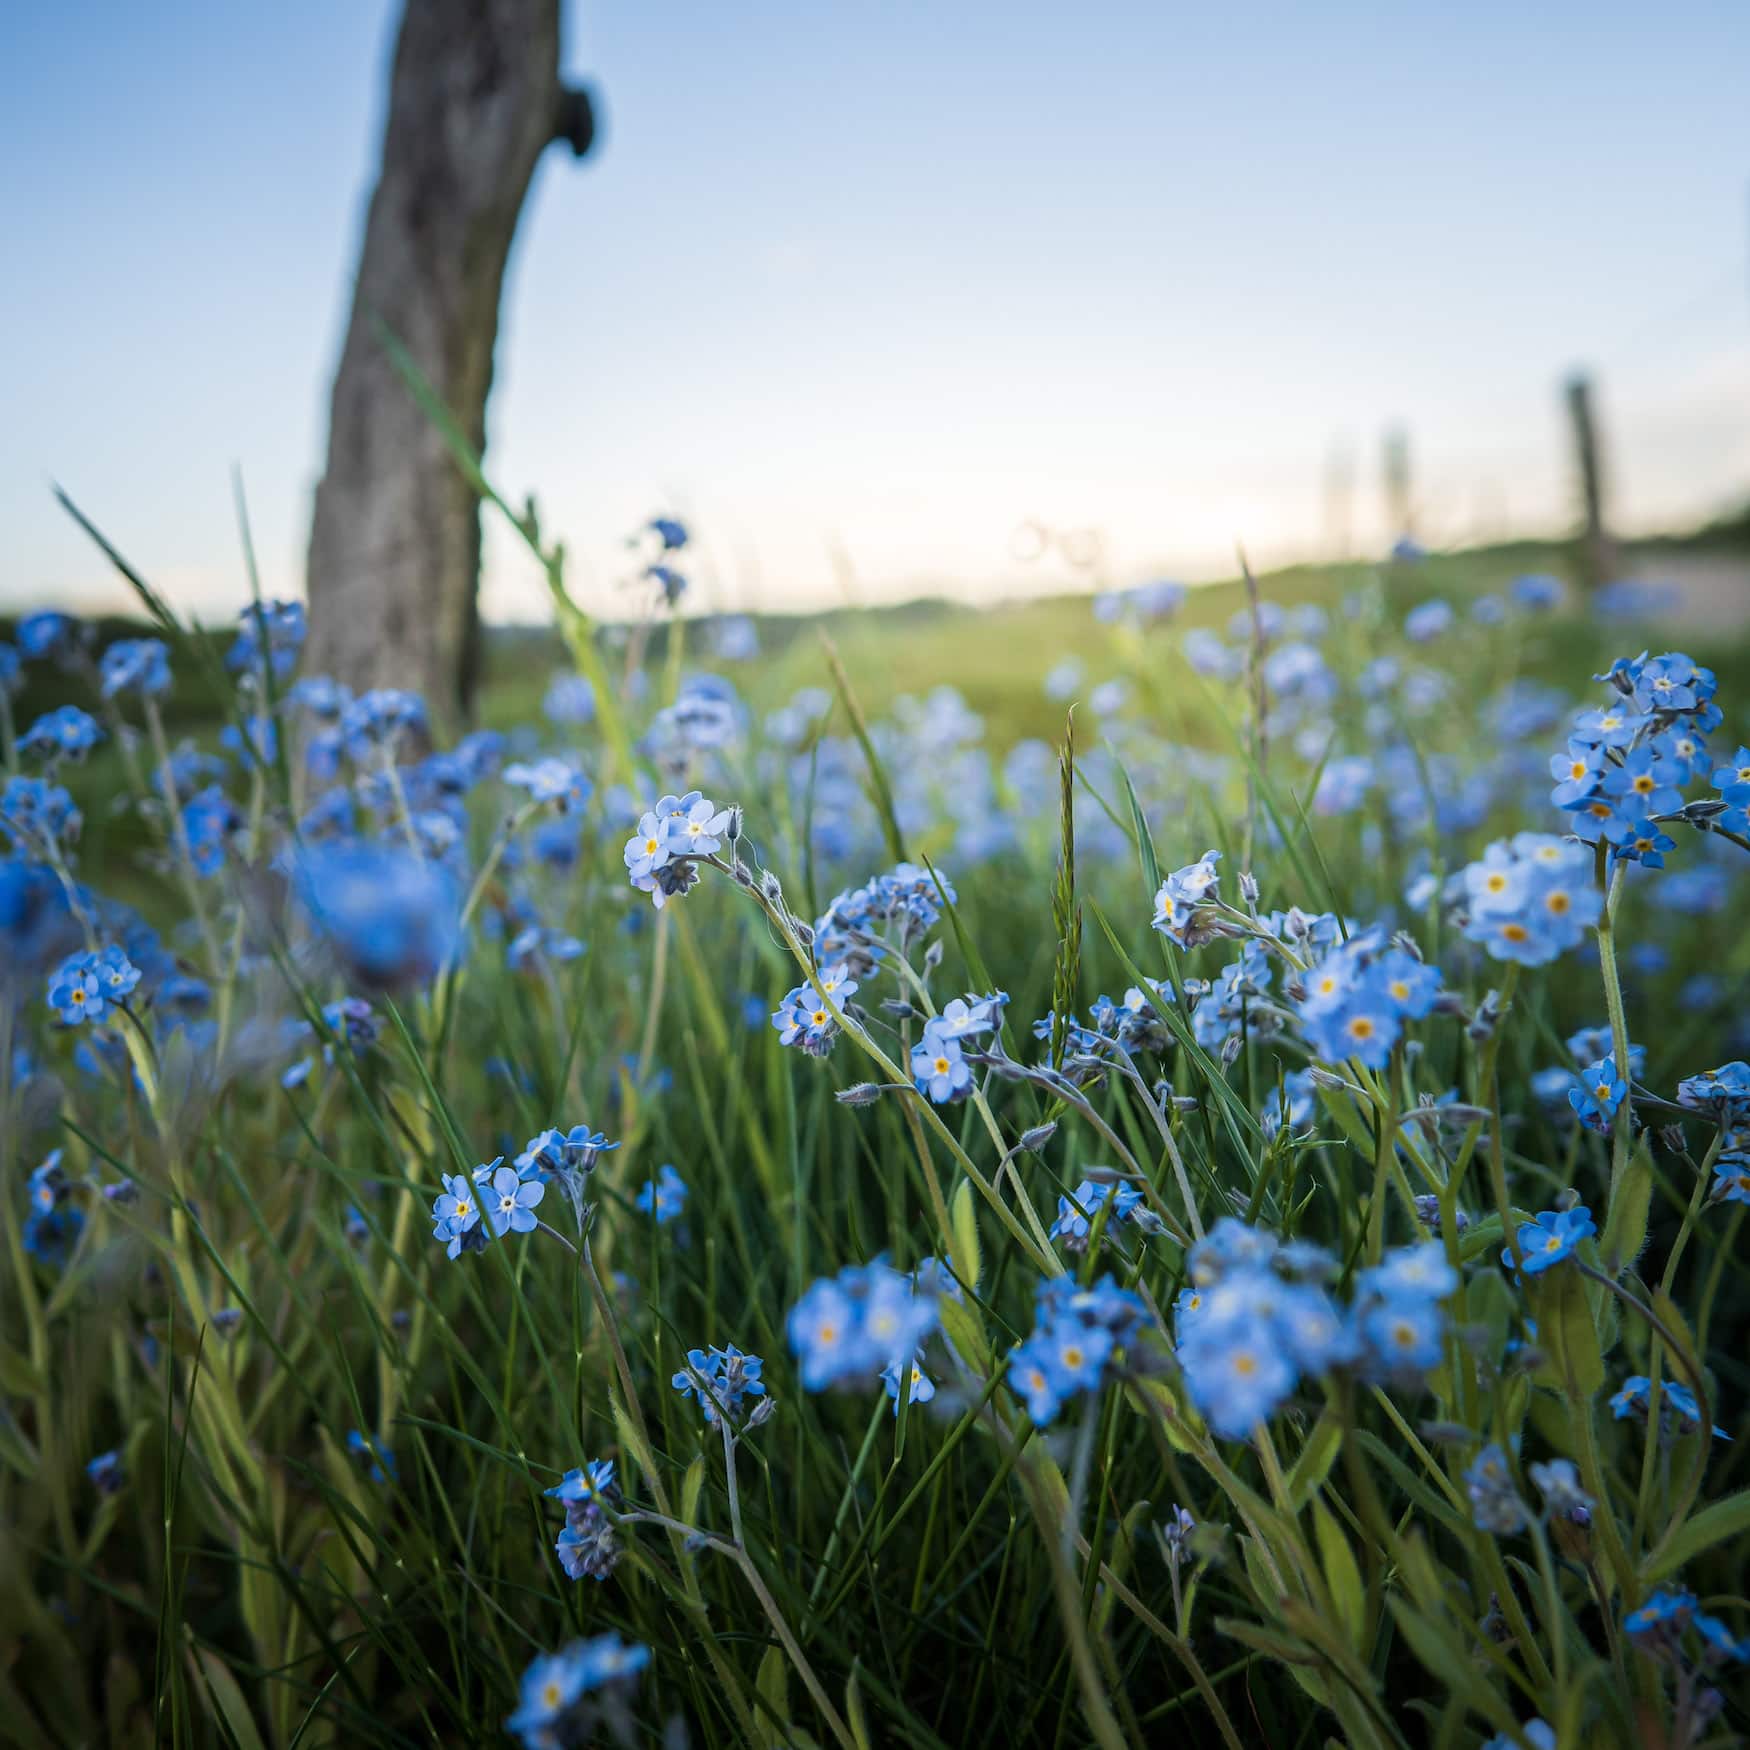 Blue flowers in a meadow